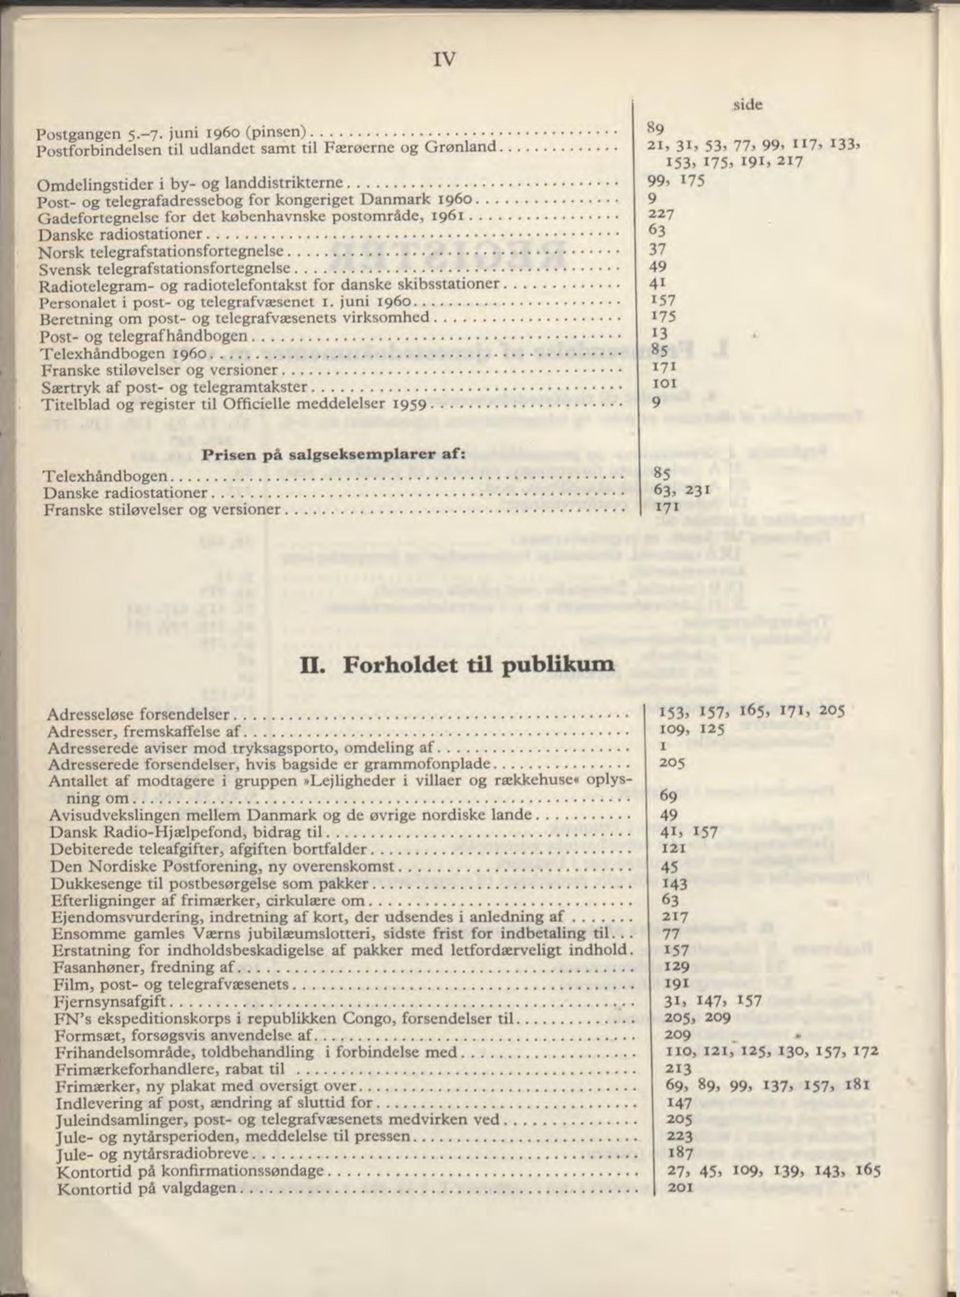 .. Svensk telegrafstationsfortegnelse... Radiotelegram - og radiotelefontakst for danske skibsstationer Personalet i post- og telegrafvæsenet 1. juni 1960.